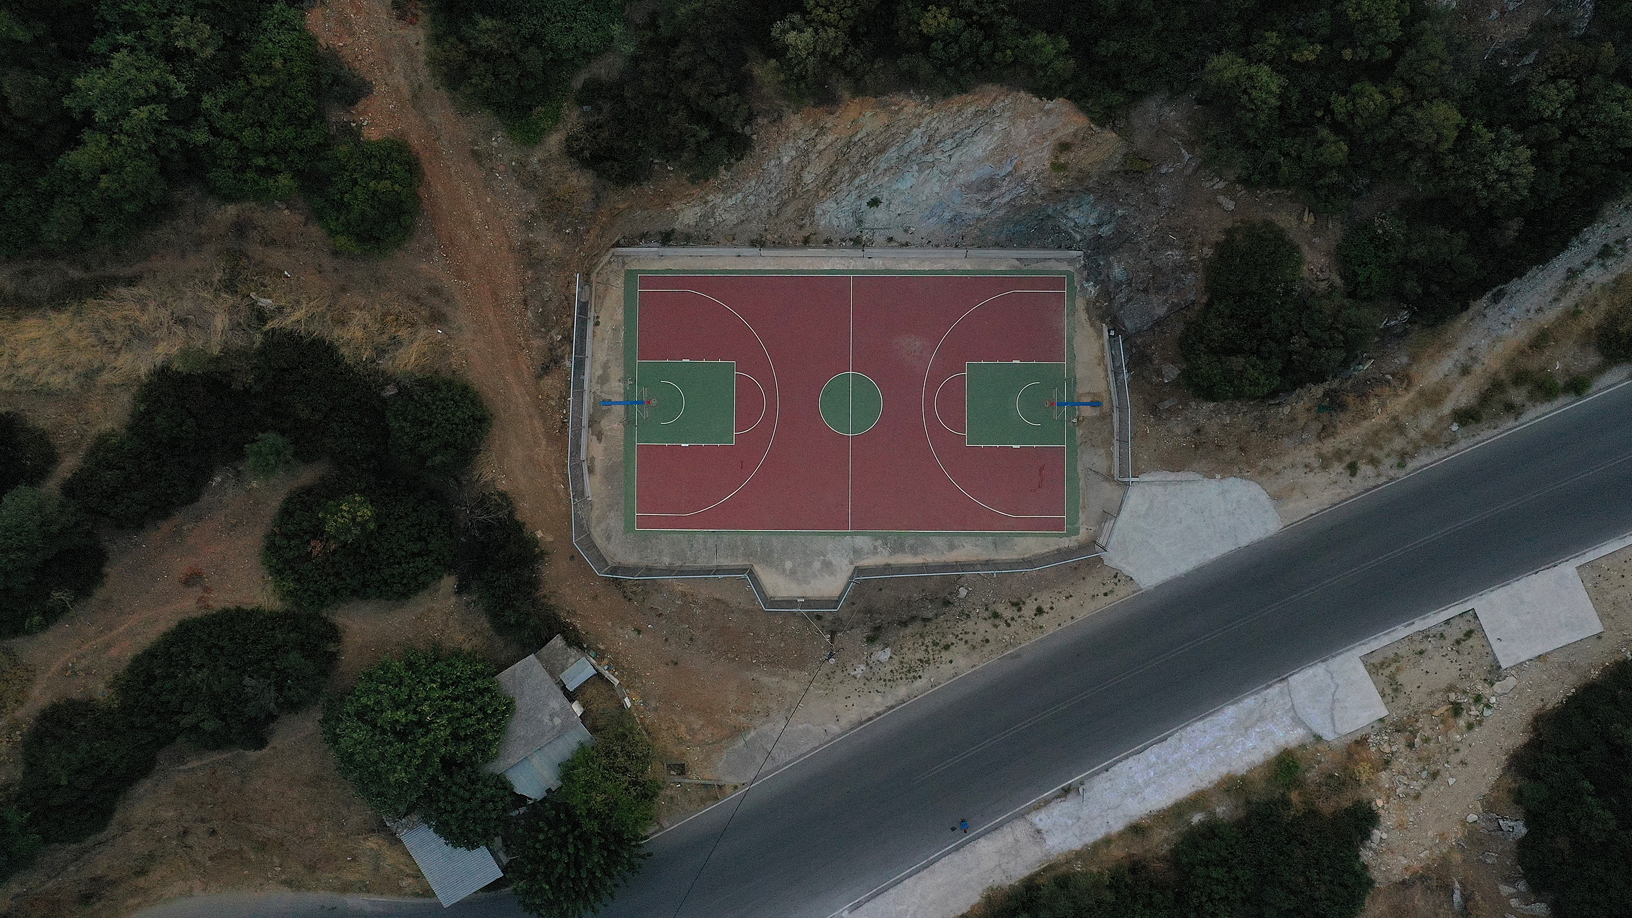 Γήπεδο μπάσκετ, χωριό Πετριές. Φωτογραφία: ©Βασίλης Συκάς, για τον Δήμο Κύμης-Αλιβερίου